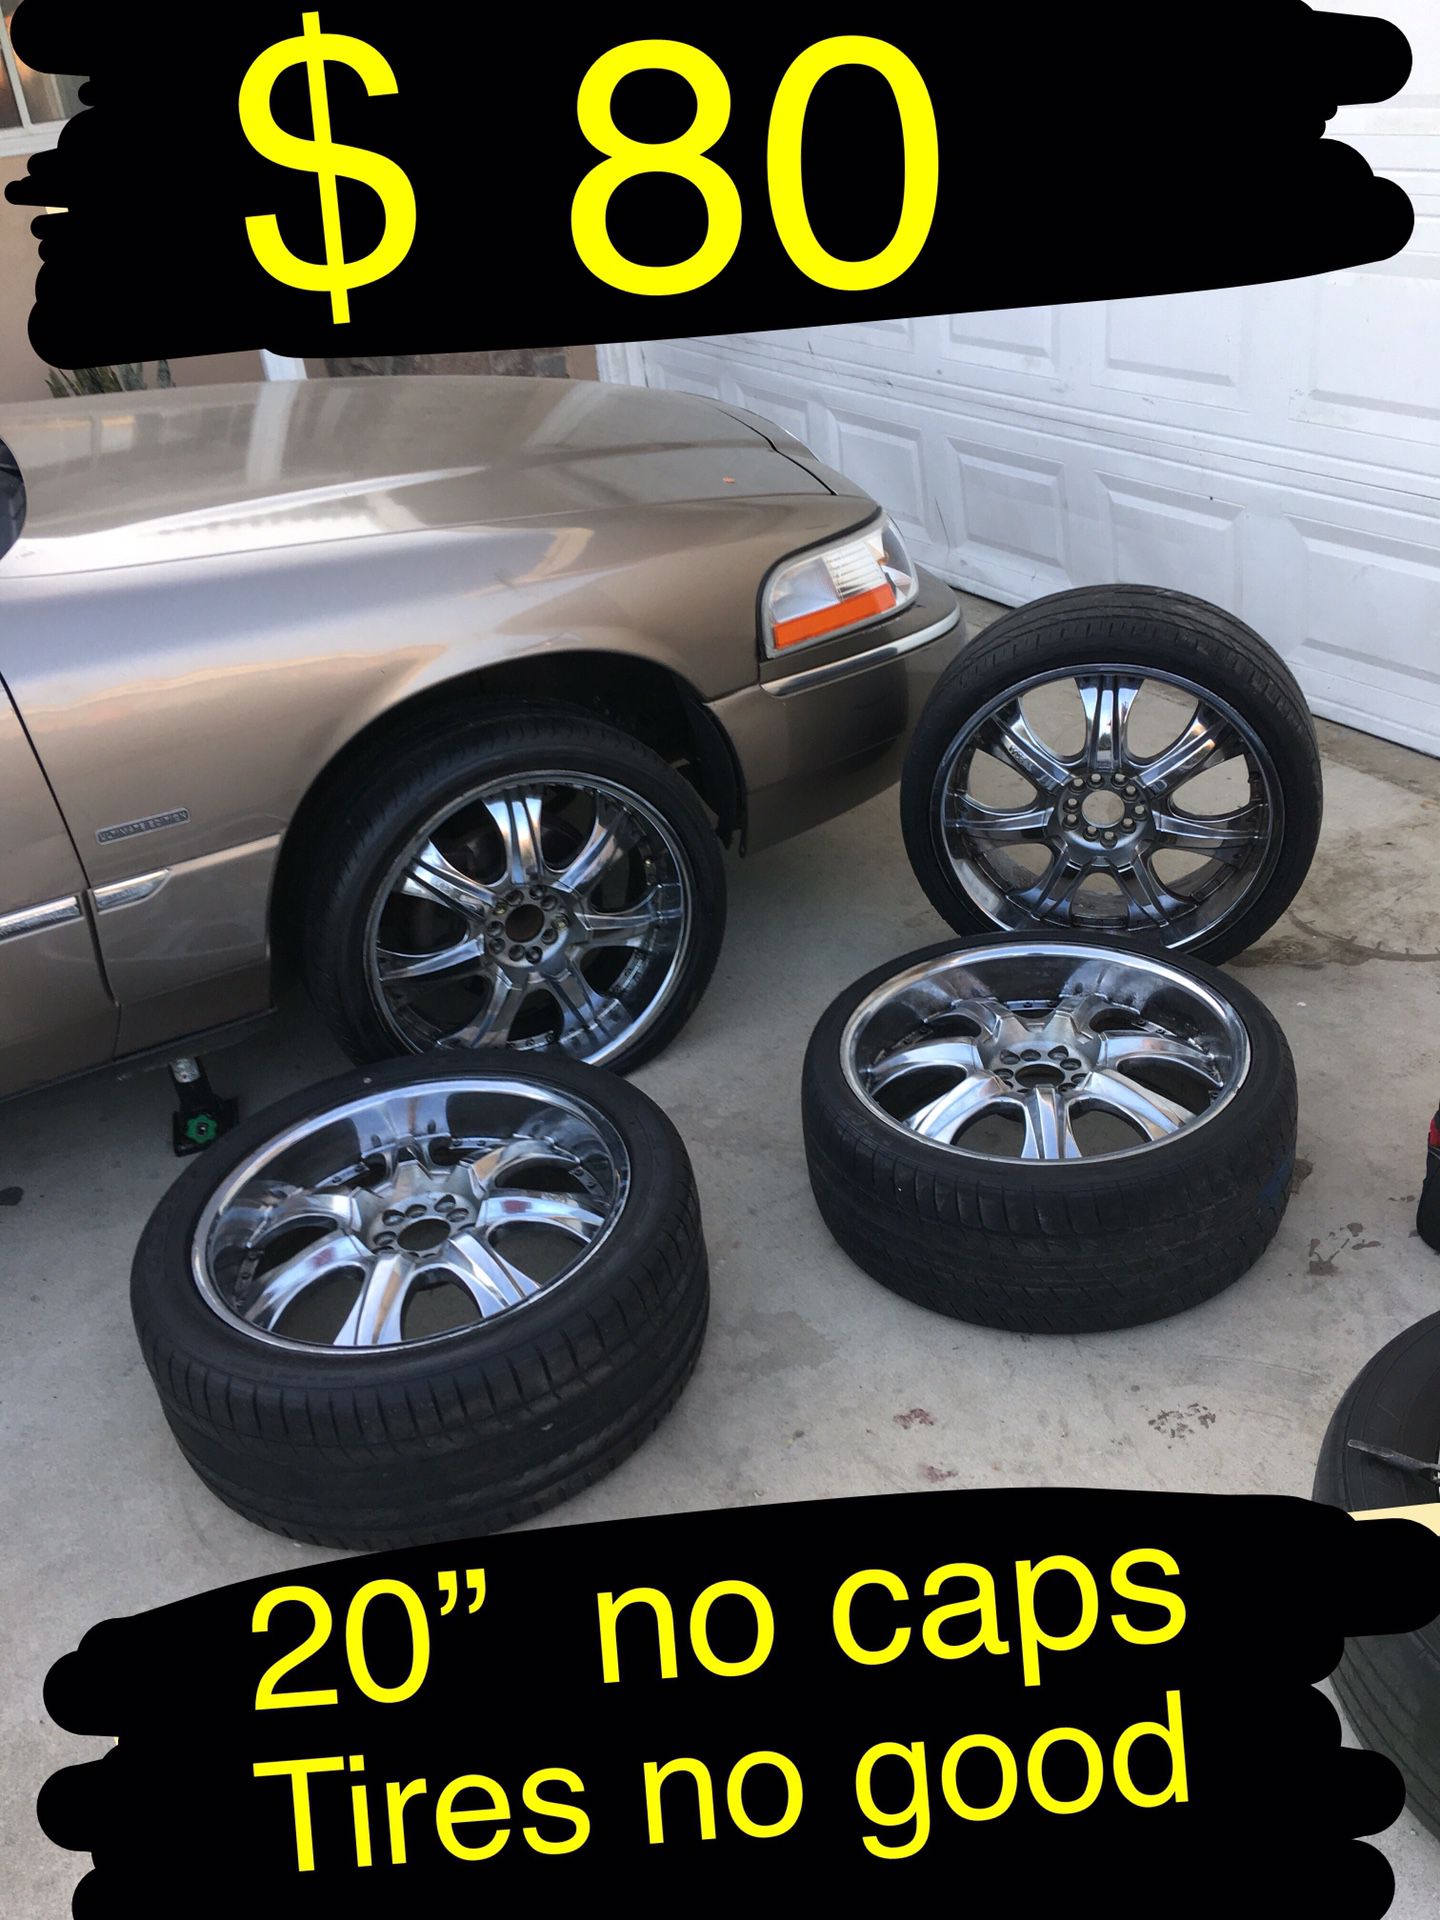 Universal 5 lug 20” chrome rims /wheels No center caps $80 takes them no less. Tires no good